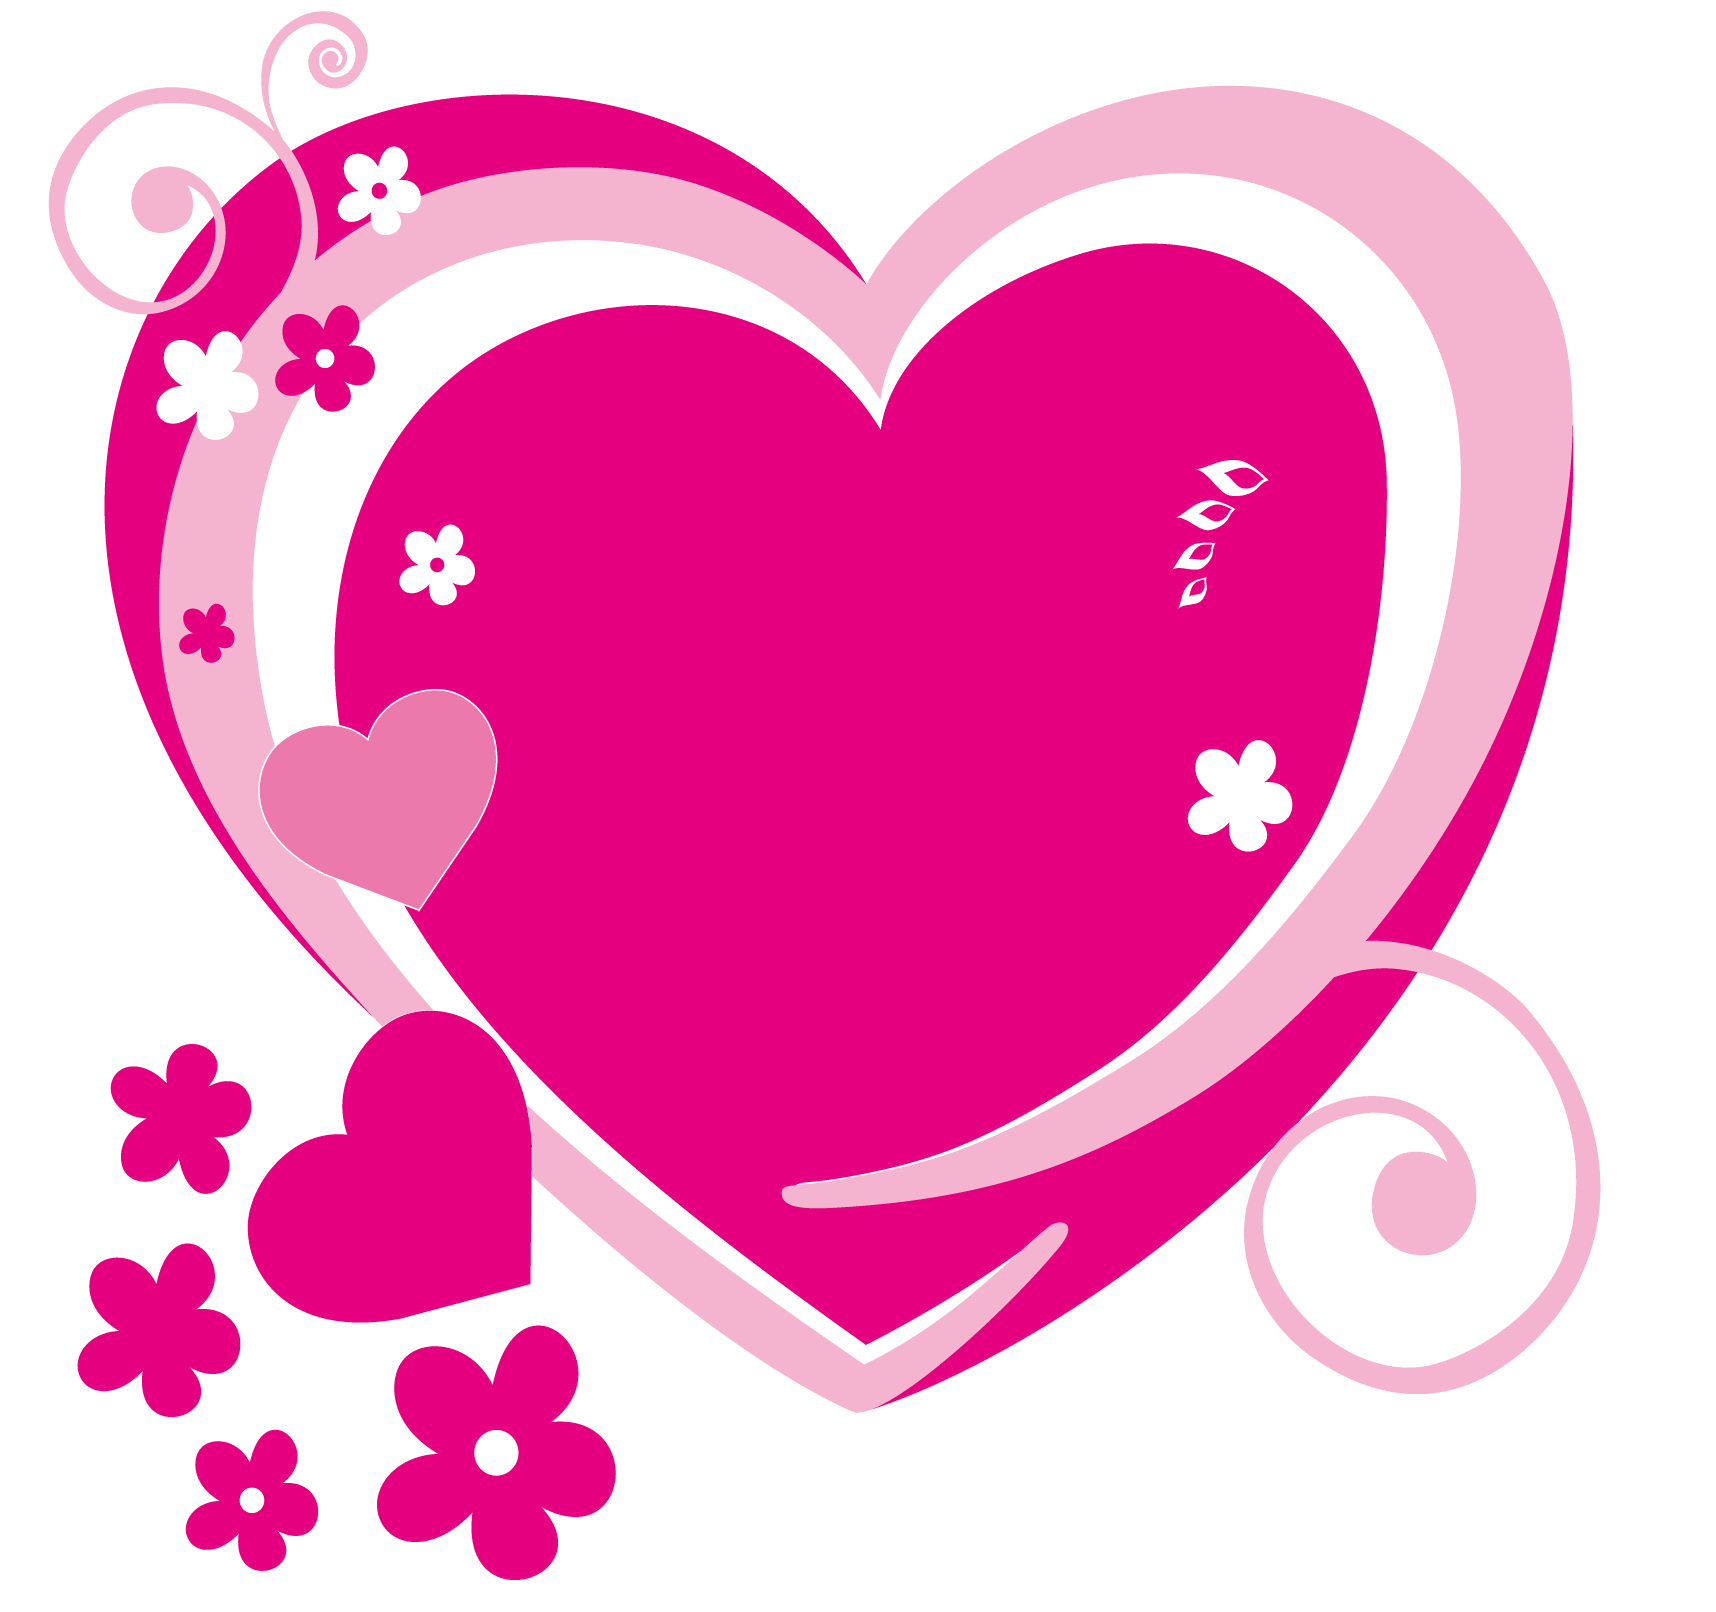 Pink Heart Clipart